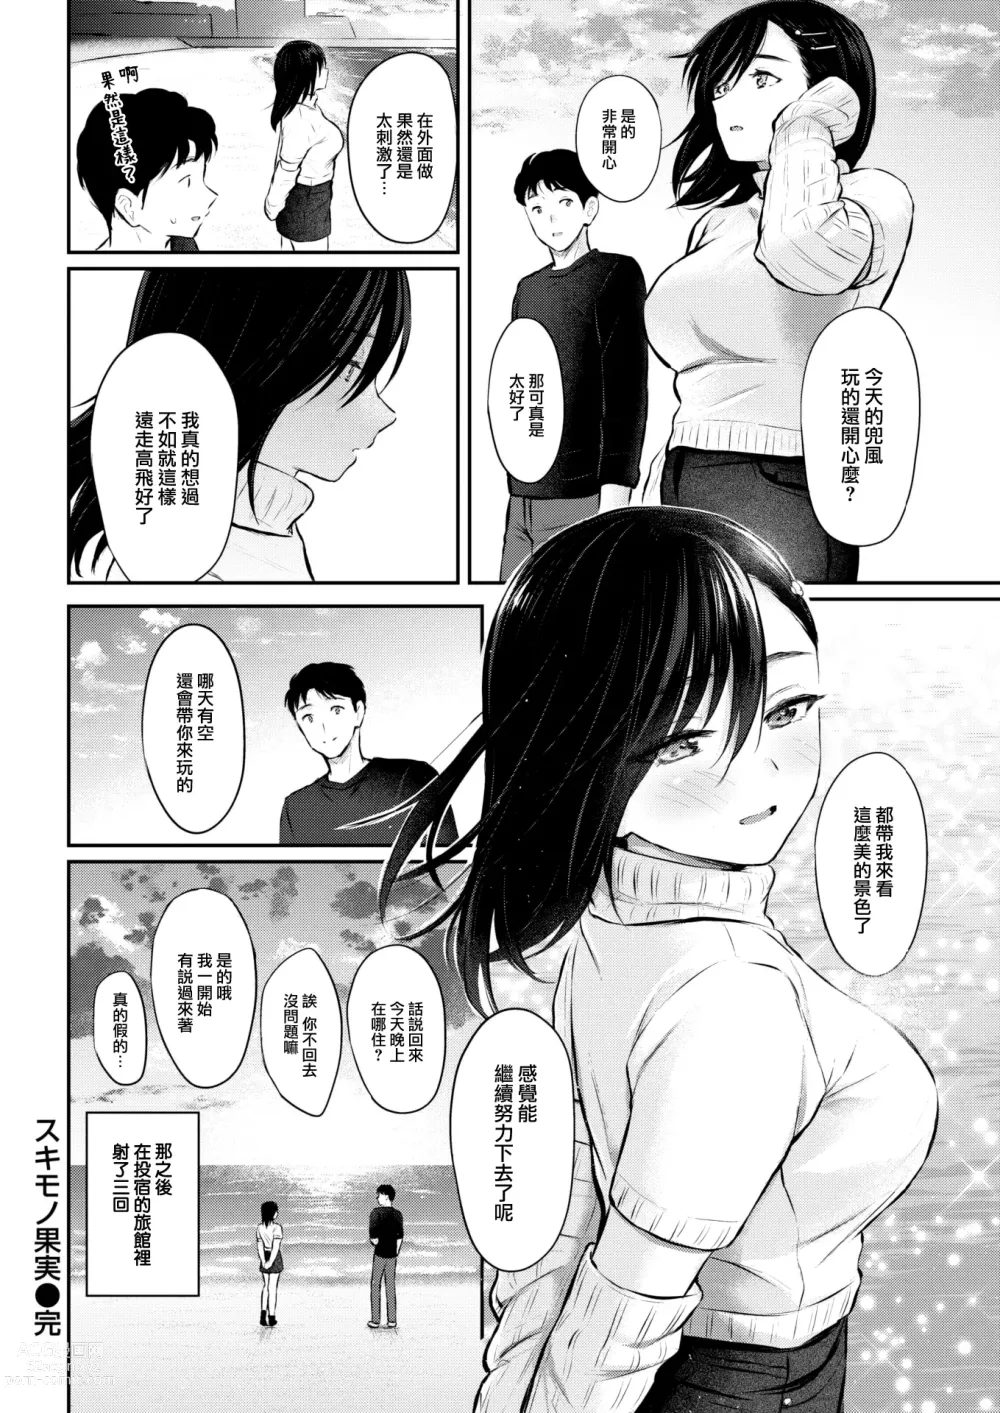 Page 33 of manga Sukimono Kajitsu